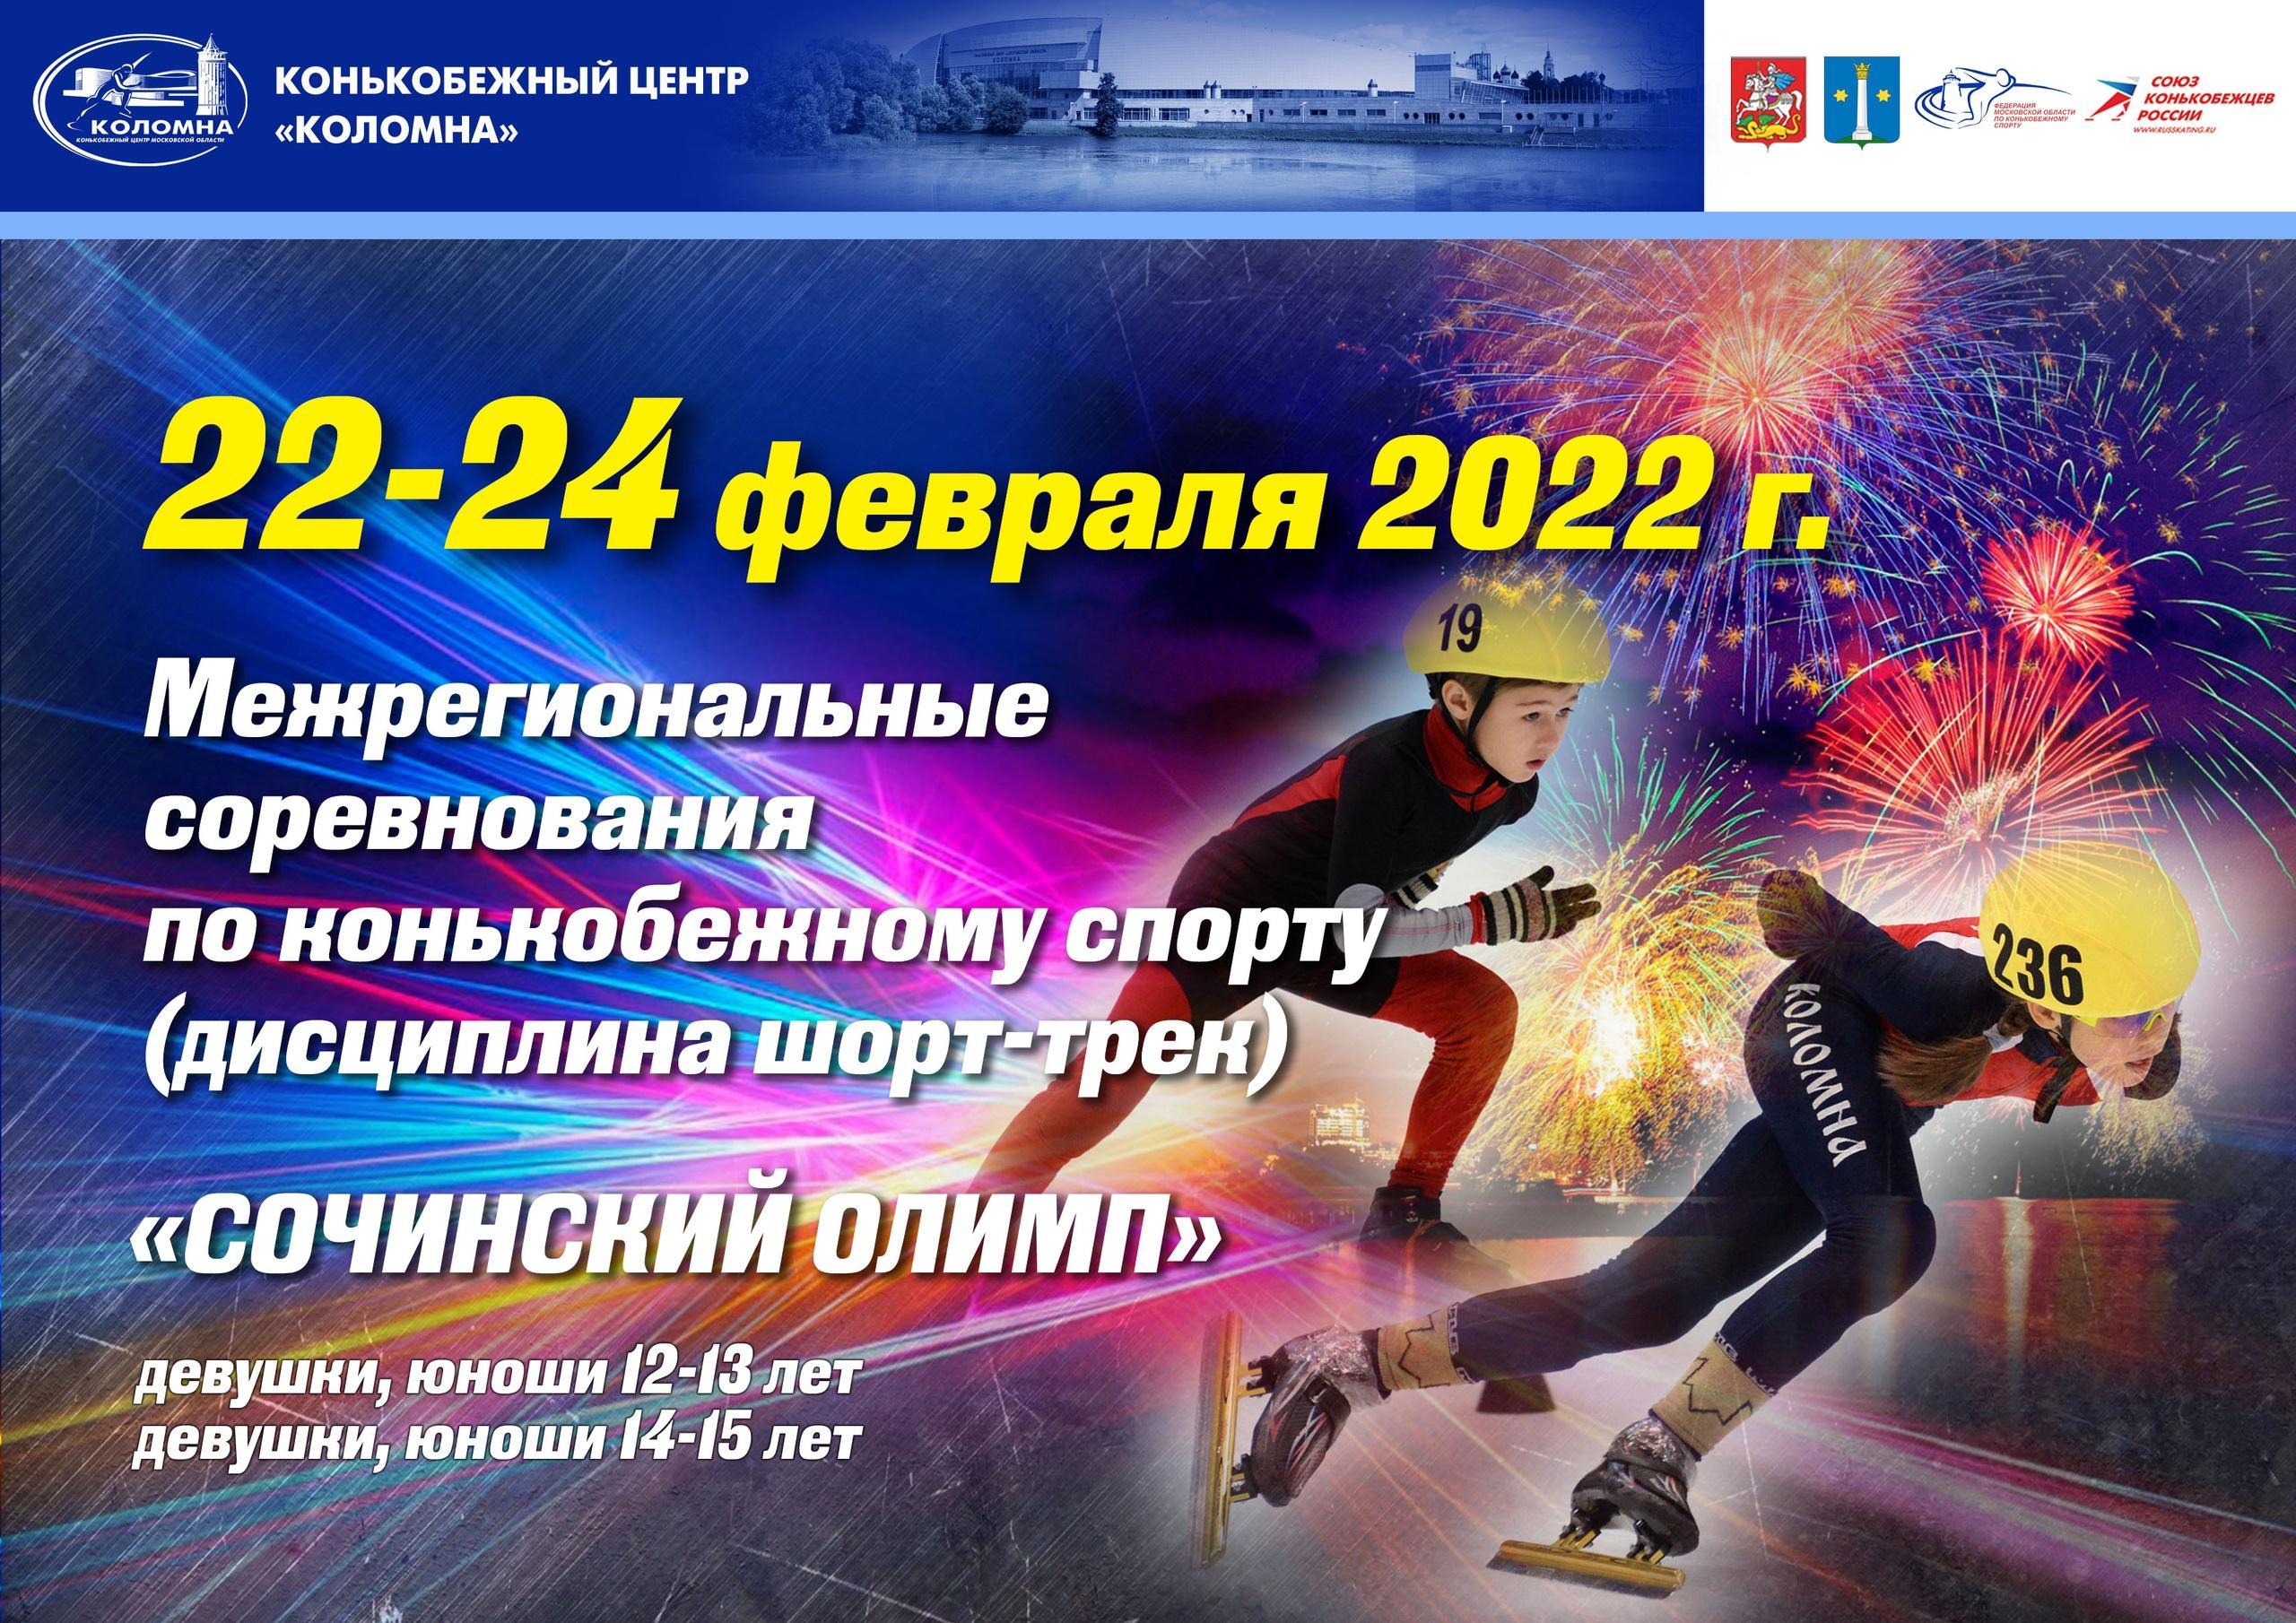 Межрегиональные соревнования по конькобежному спорту пройдут в Коломне